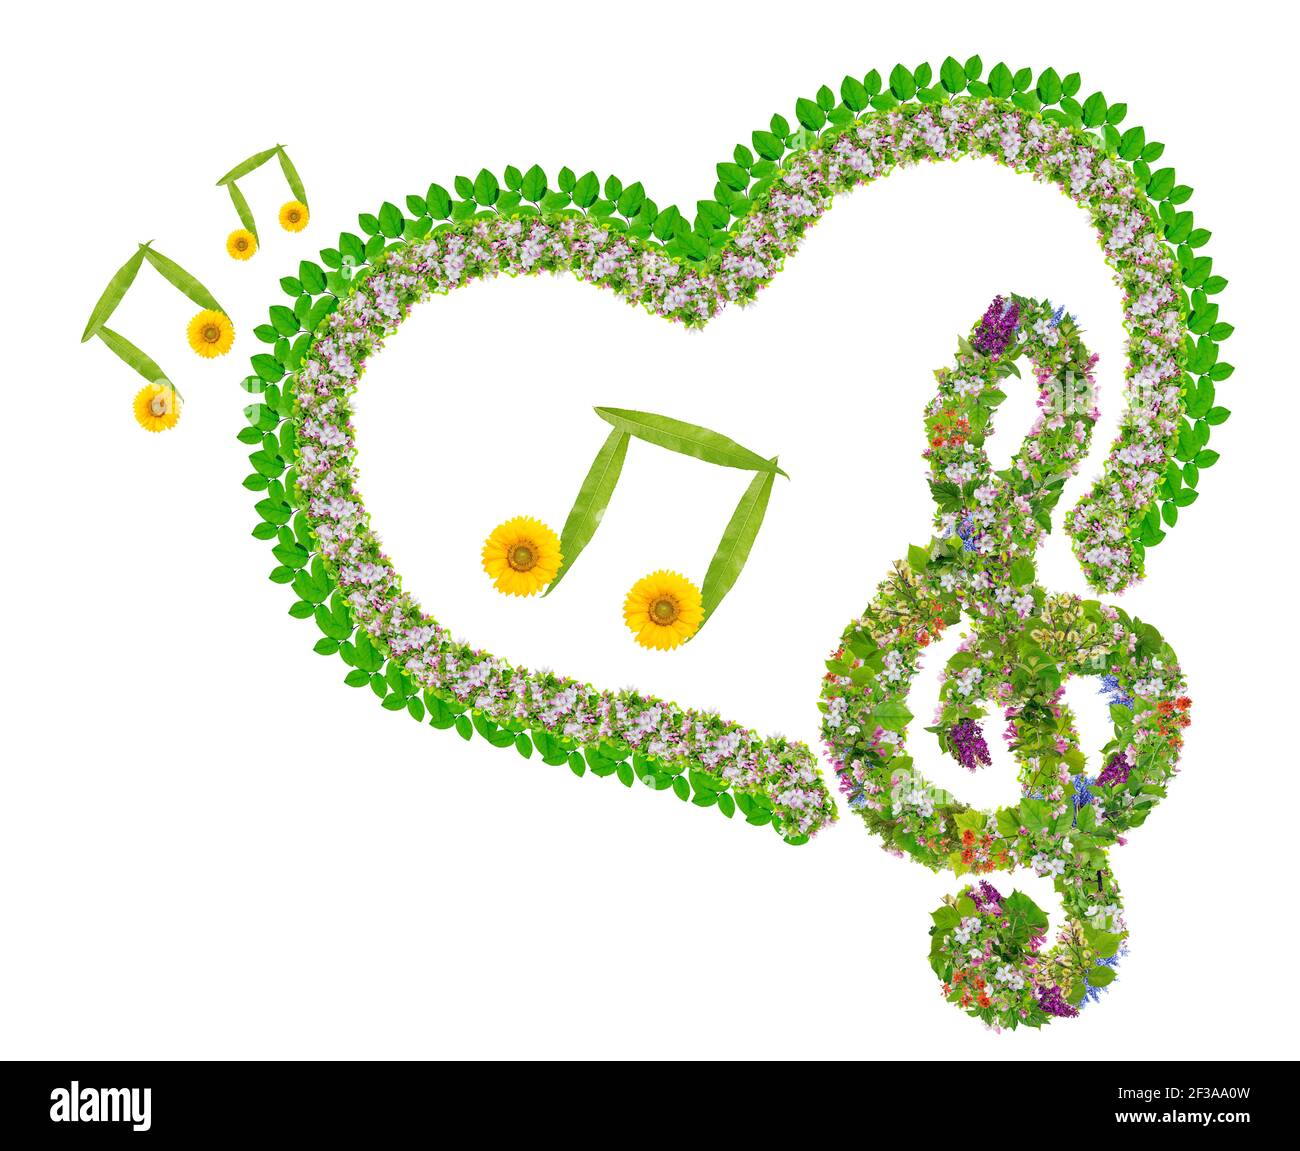 Amore primaverile e concetto musicale fatto da fiori e foglie. Isolato su collage fotografico bianco fatto a mano Foto Stock